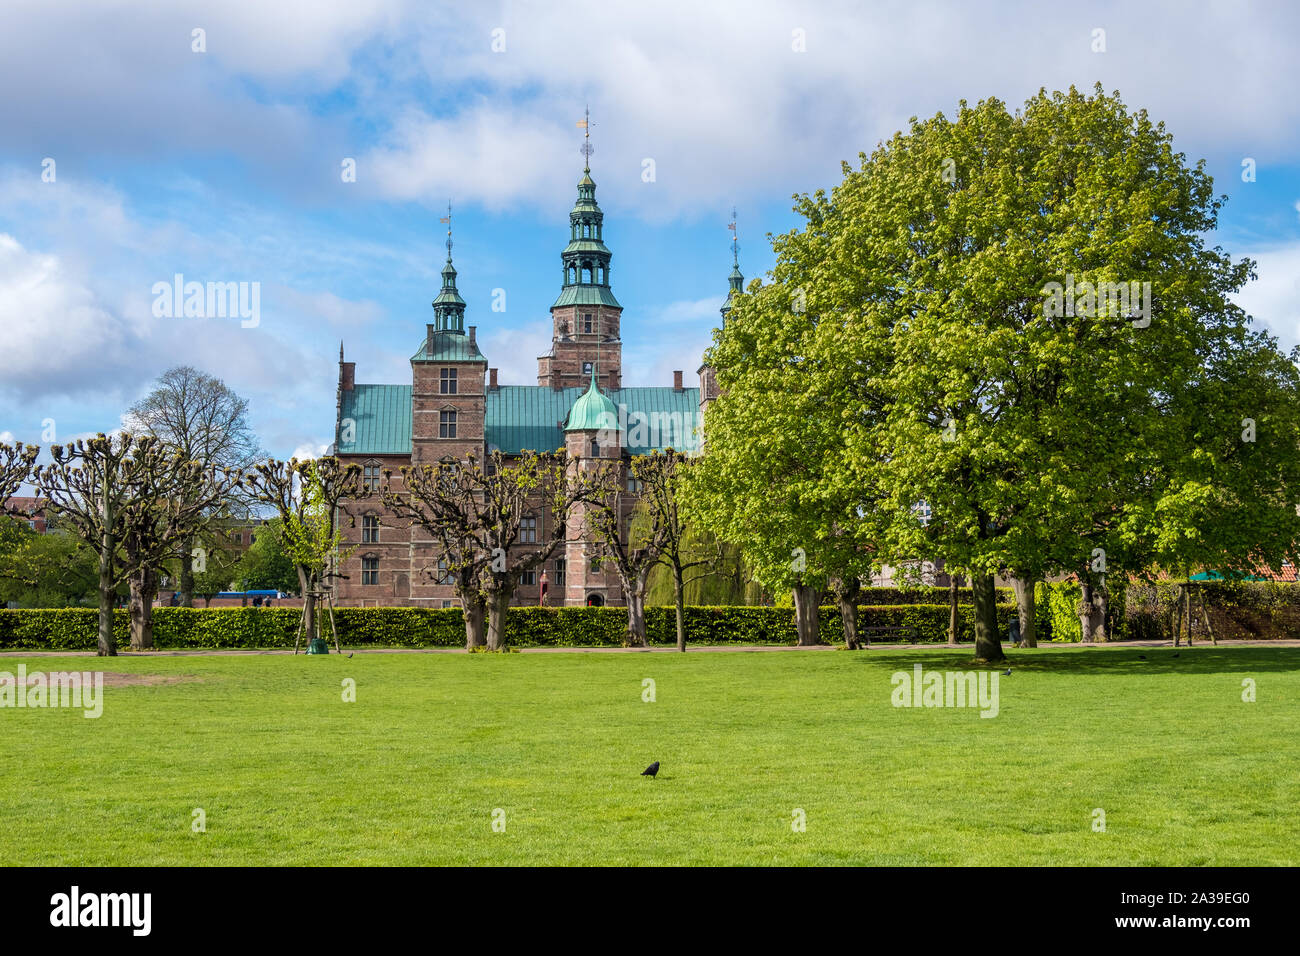 Copenhagen, Denmark - May 04, 2019: Rosenborg Castle and King's Garden in central Copenhagen, Denmark Stock Photo